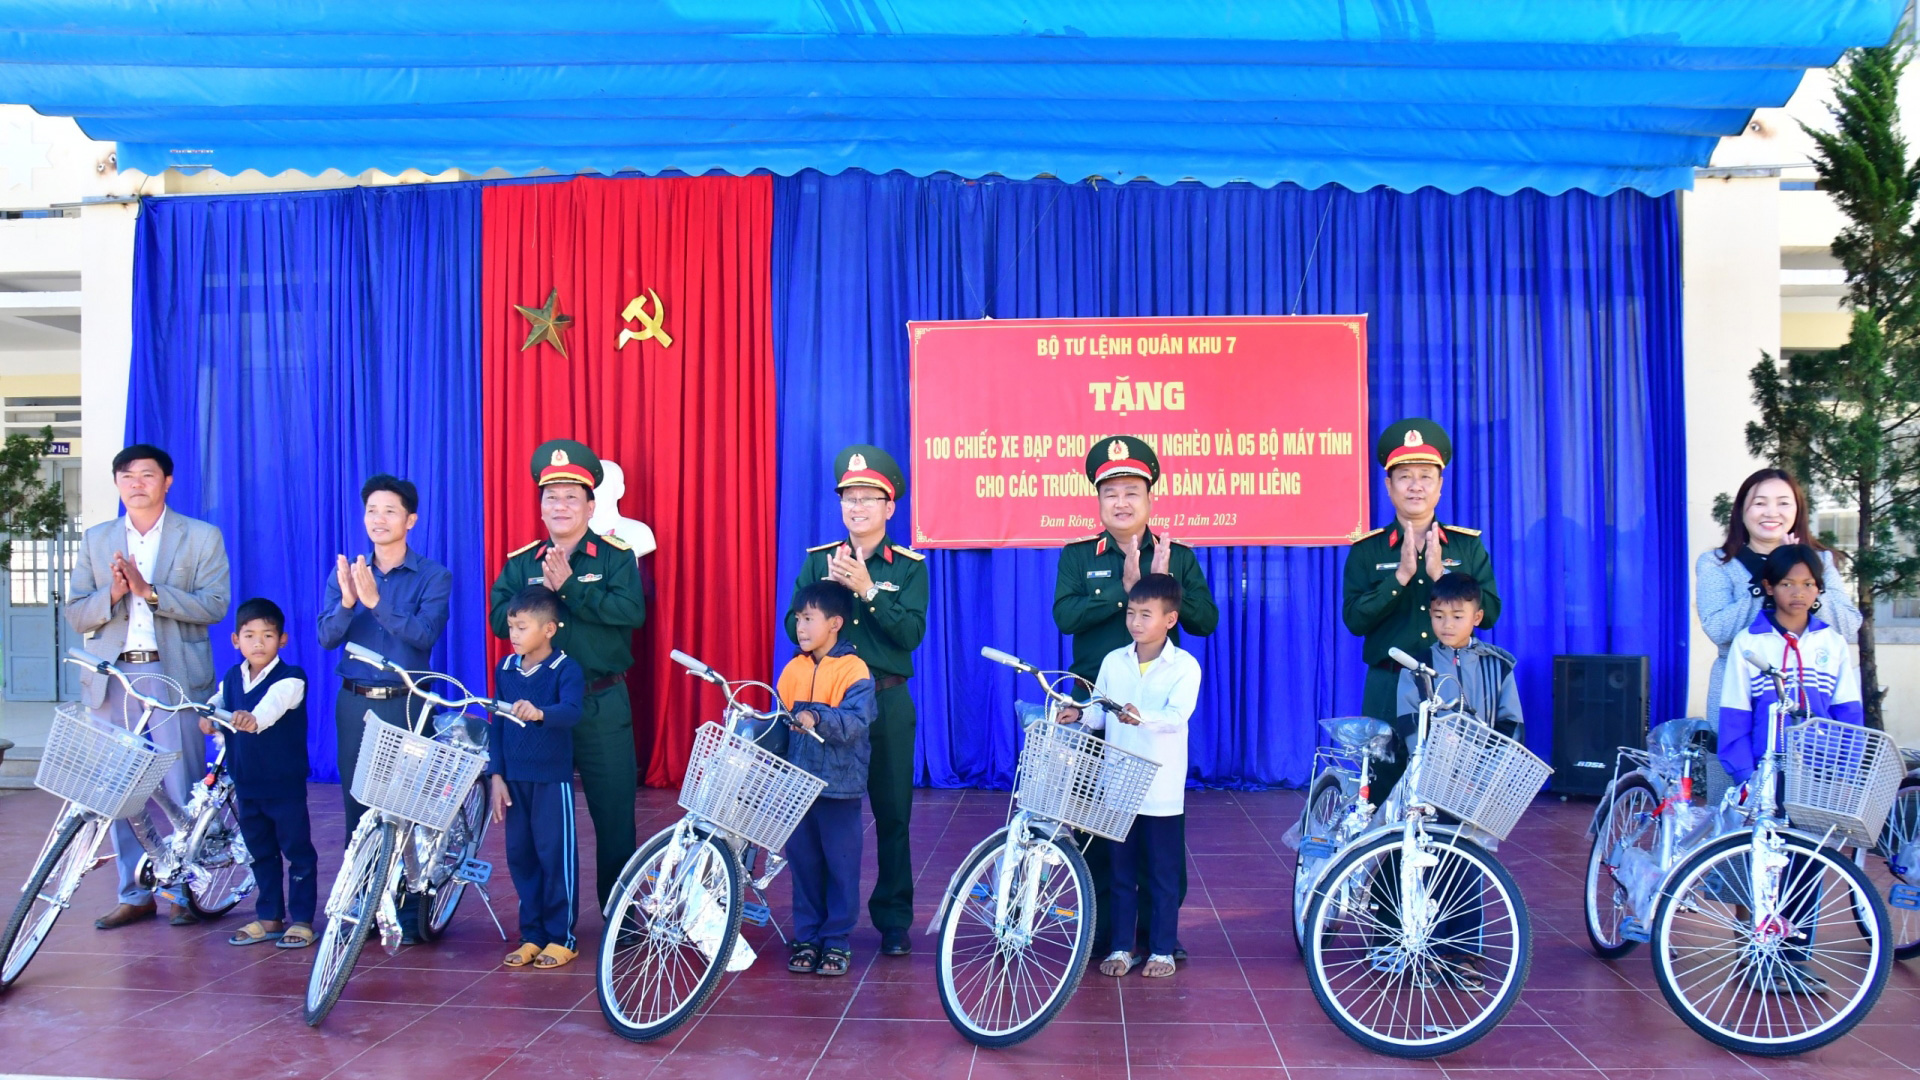 Thiếu tướng Trần Vinh Ngọc – Ủy viên Thường vụ Đảng ủy, Phó Chính ủy Quân khu 7 (thứ 3 từ phải qua) tặng xe đạp cho học sinh có hoàn cảnh khó khăn trên địa bàn xã Phi Liêng